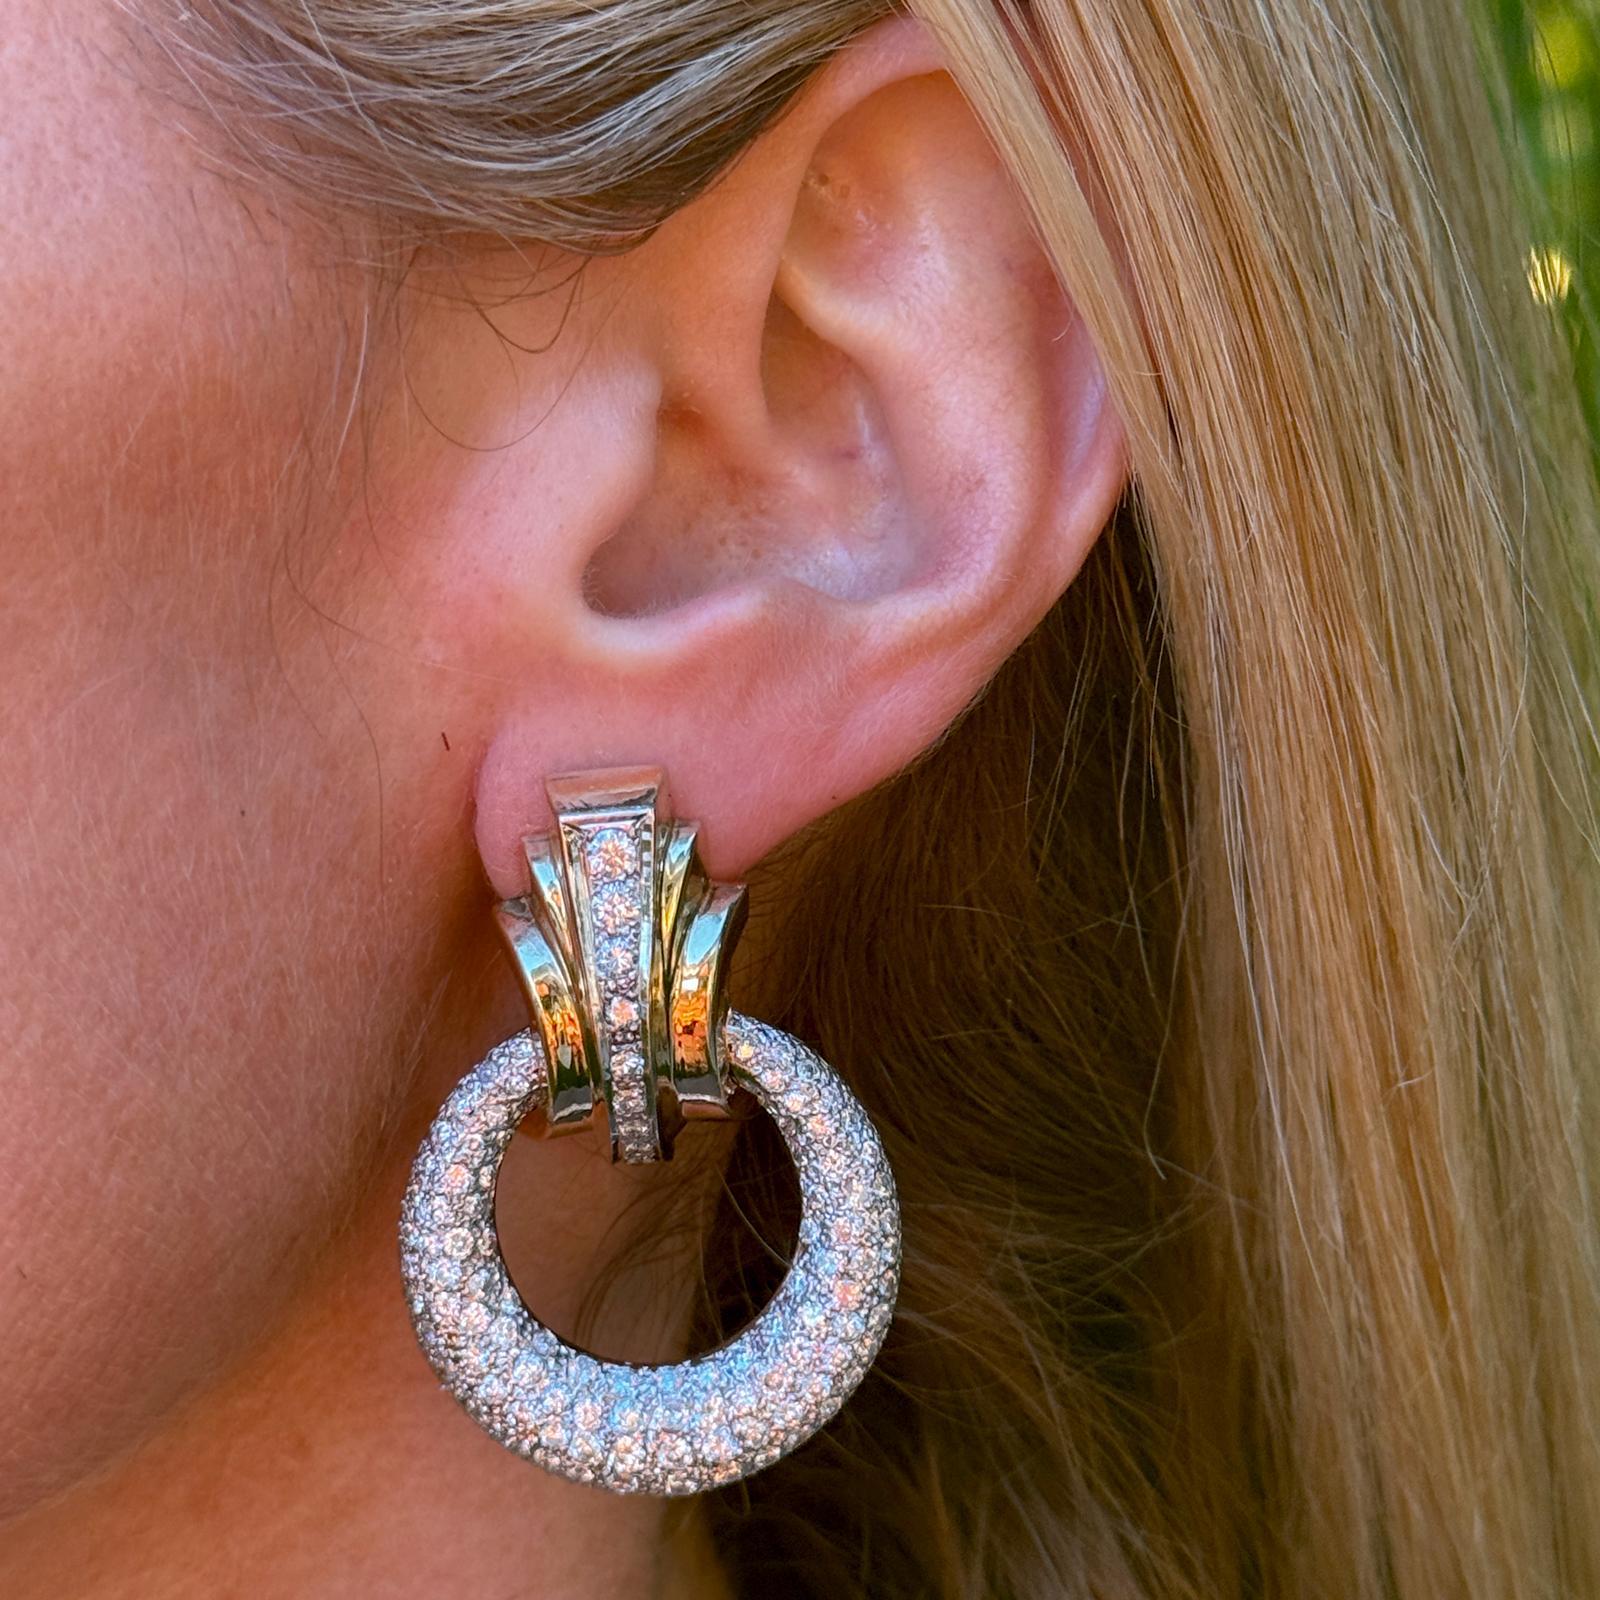 Magnifiques boucles d'oreilles en diamant door knocker réalisées en or jaune et blanc 14 carats. Les boucles d'oreilles pendantes sont ornées de diamants ronds de taille brillant d'un poids total d'environ 10,00 carats. Les diamants sont de couleur